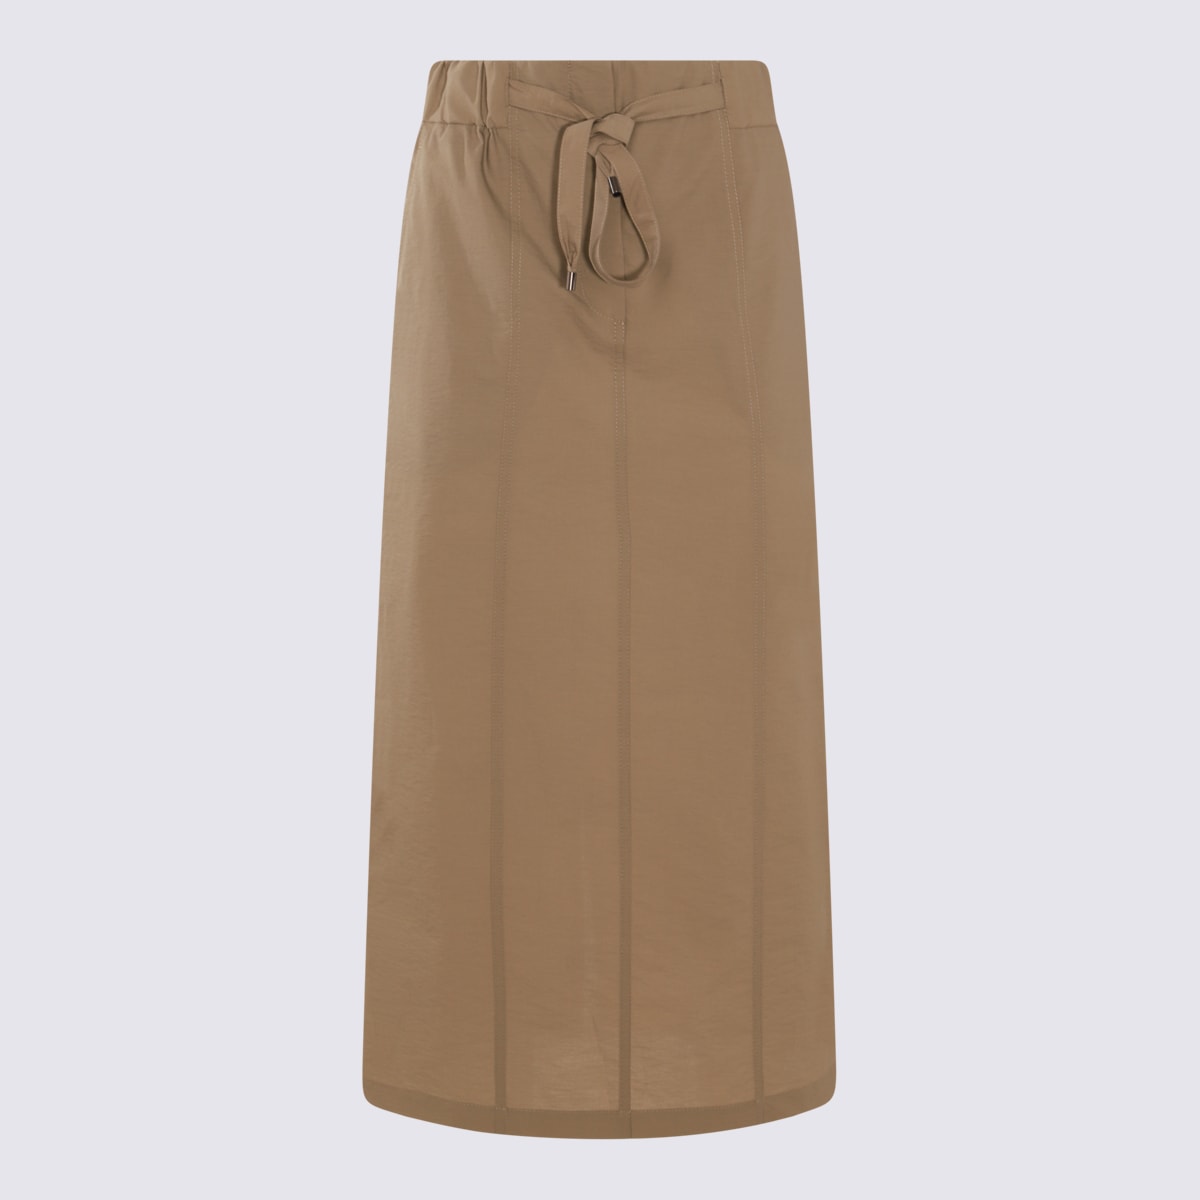 Light Brown Cotton Blend Skirt